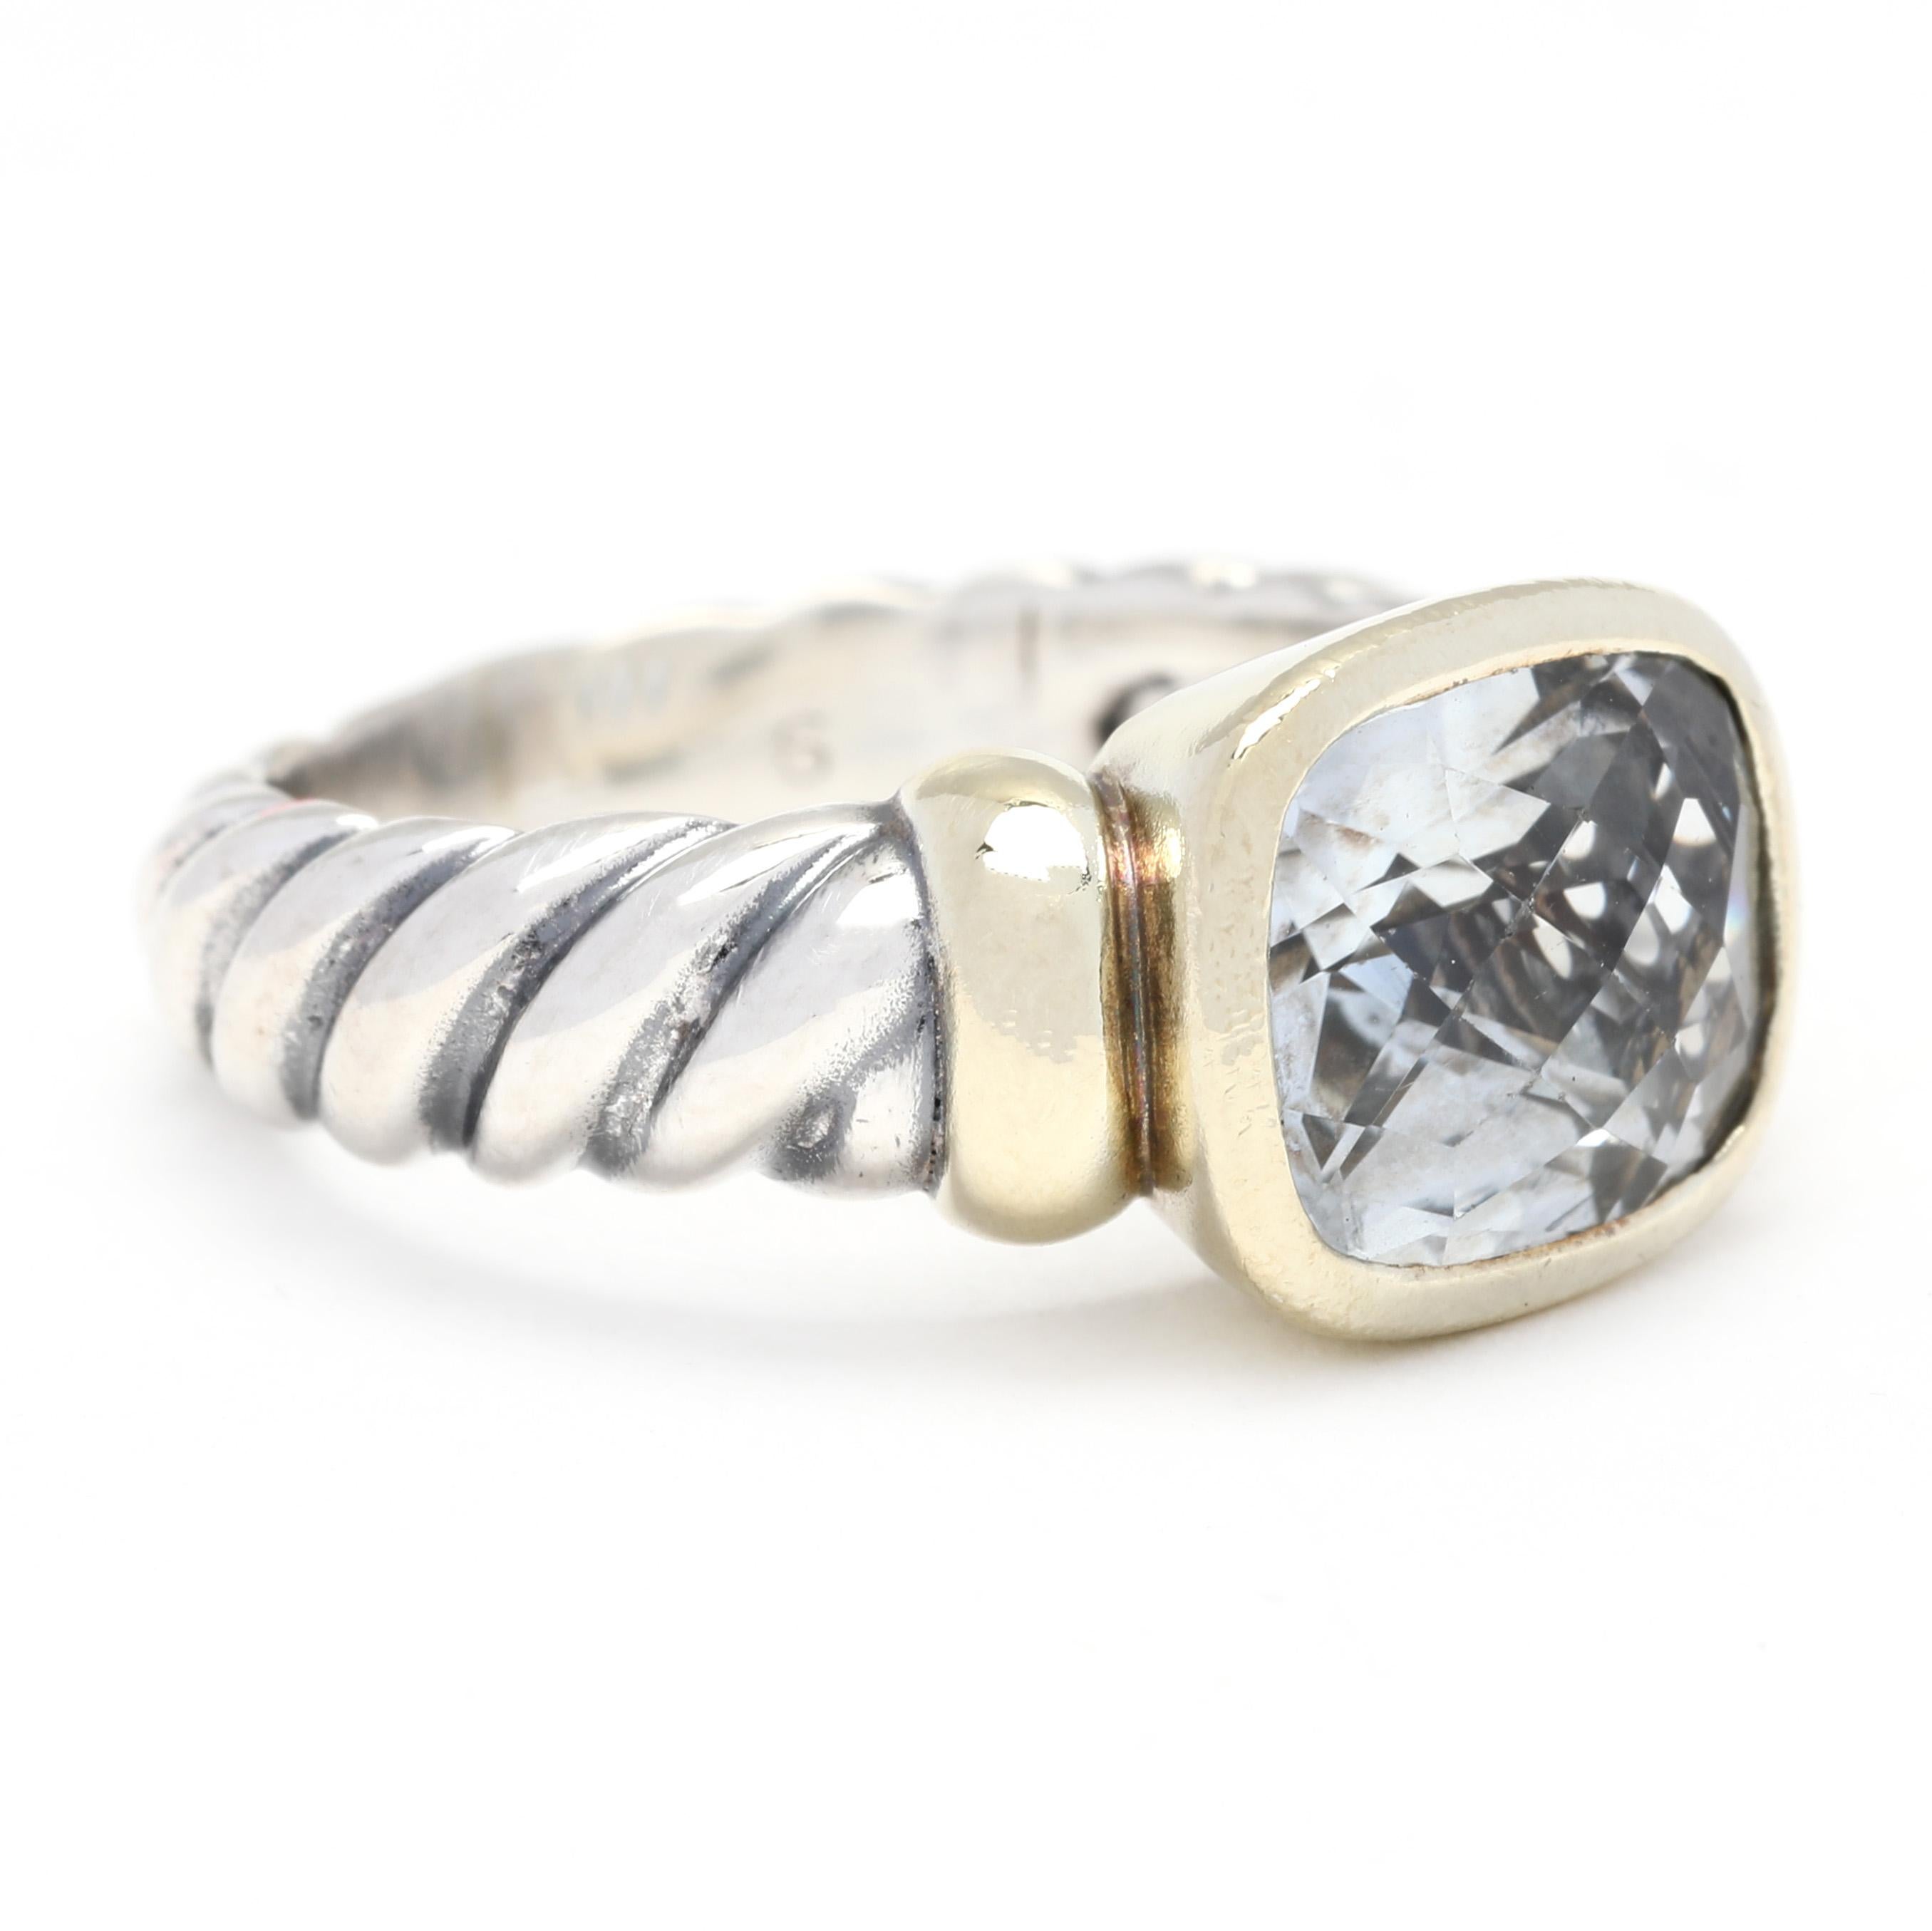 Dieser atemberaubende David Yurman Noblesse Prasiolite Ring ist aus 14k Gelbgold, Sterlingsilber und Prasiolite (grüner Amethyst) gefertigt. Der Ring ist mit einem zarten Kabel aus Sterlingsilber versehen, das sich um den Prasiolith in der Mitte